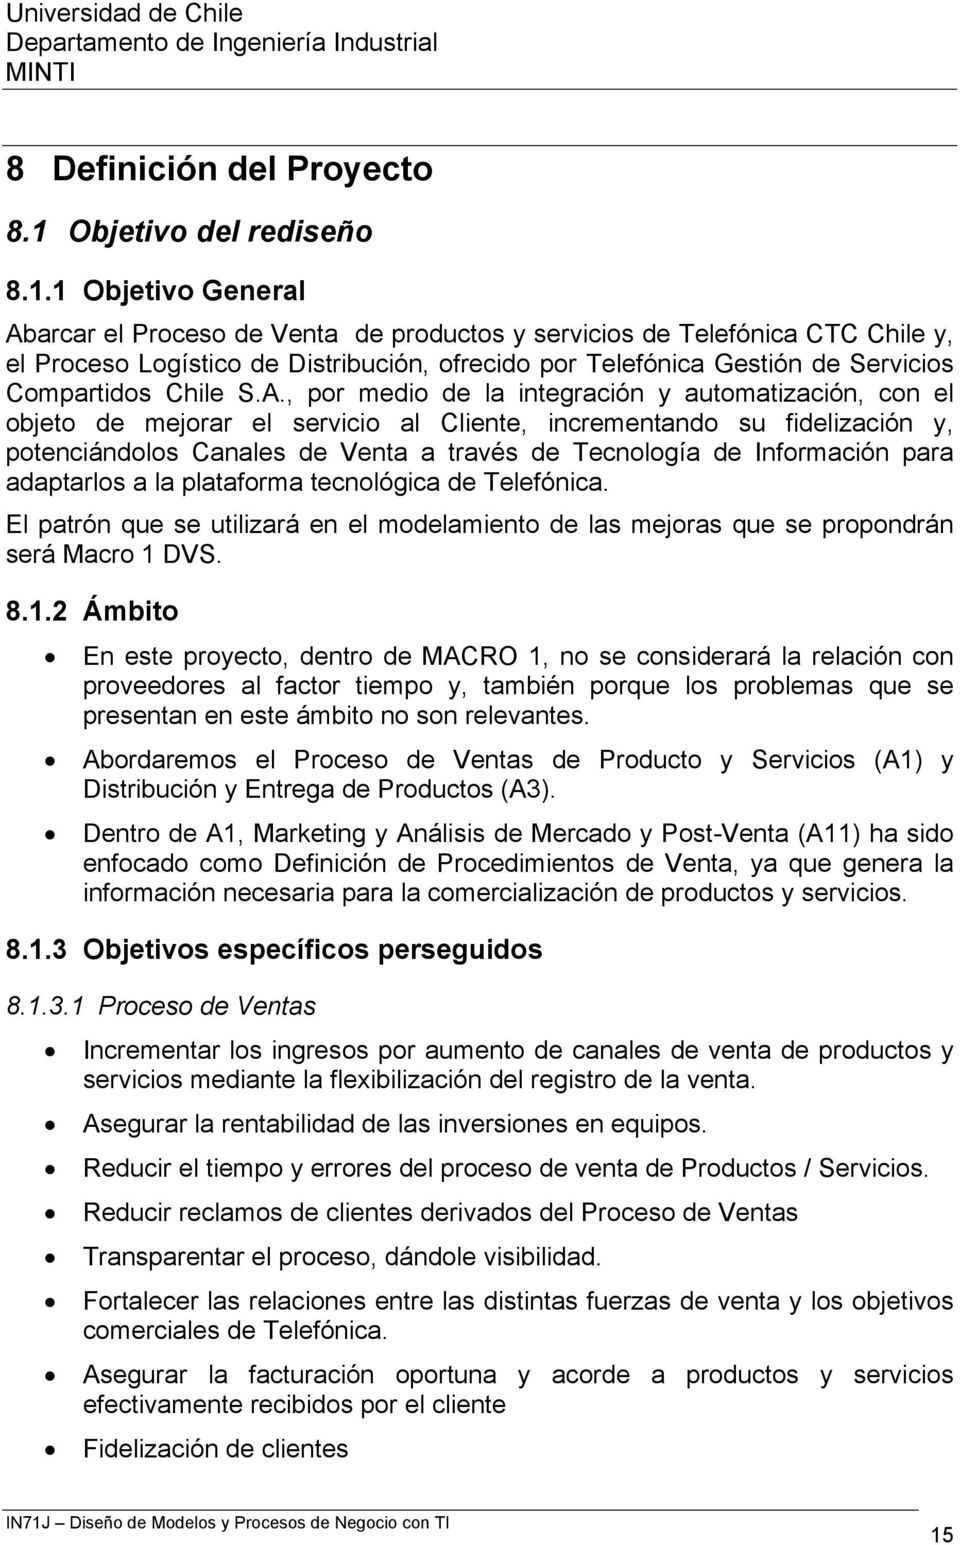 1 Objetivo General Abarcar el Proceso de Venta de productos y servicios de Telefónica CTC Chile y, el Proceso Logístico de Distribución, ofrecido por Telefónica Gestión de Servicios Compartidos Chile